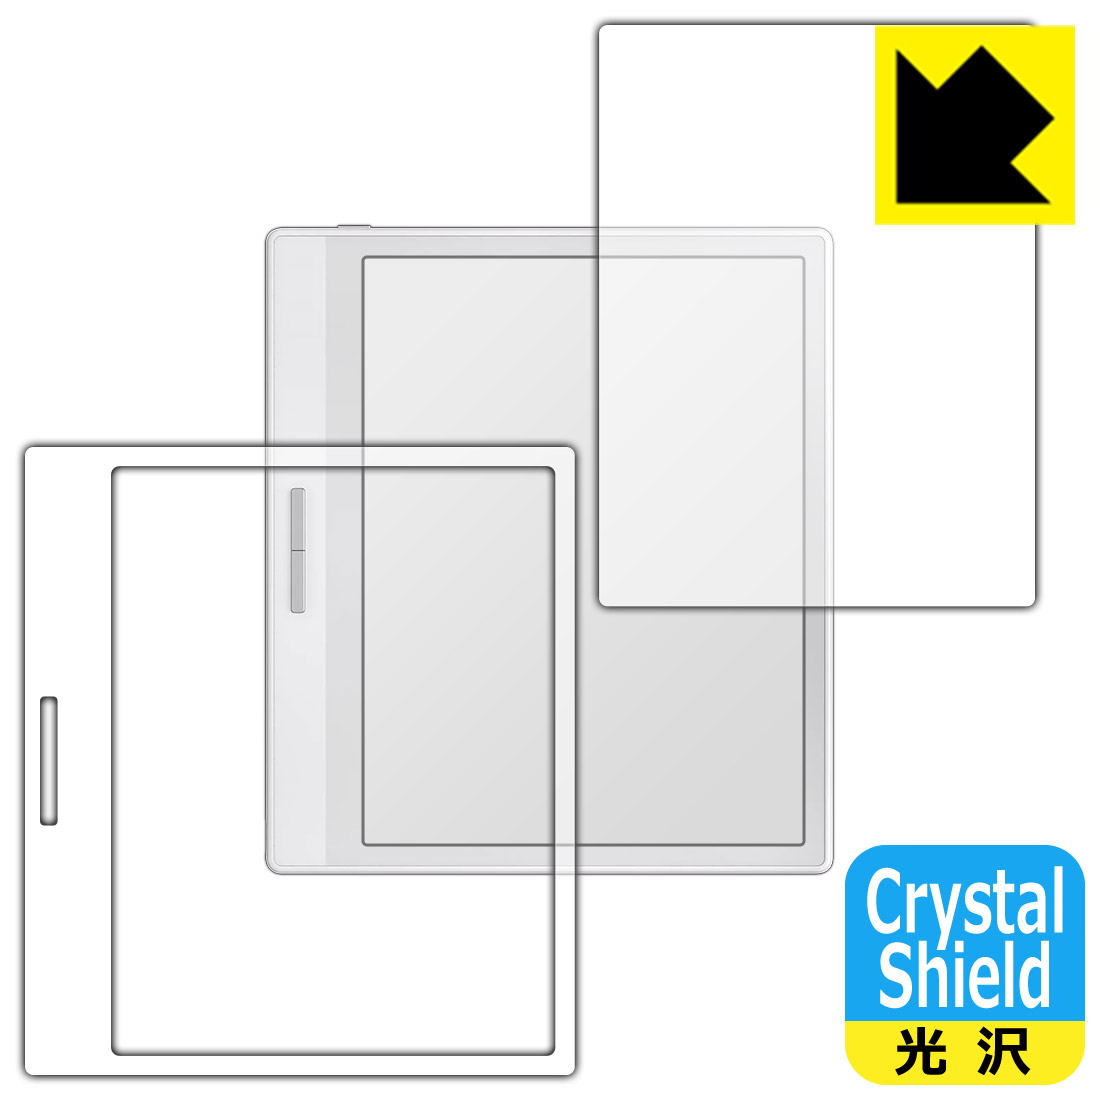 Crystal ShieldyzیtB Onyx BOOX Leaf2 yzCgfpz { А